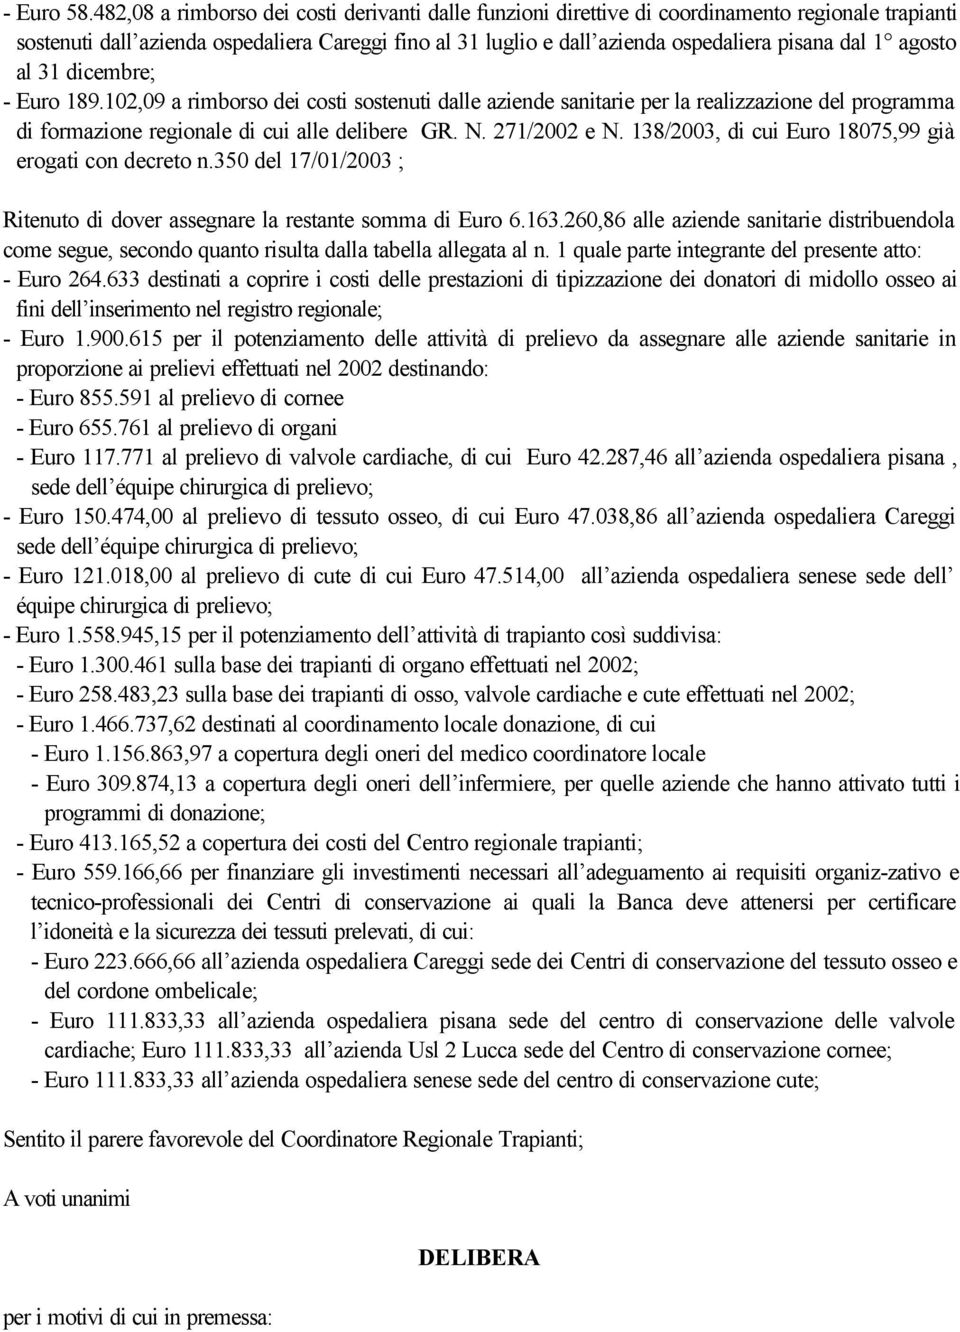 1 agosto al 31 dicembre; - Euro 189.102,09 a rimborso dei costi sostenuti dalle aziende sanitarie per la realizzazione del programma di formazione regionale di cui alle delibere GR. N. 271/2002 e N.